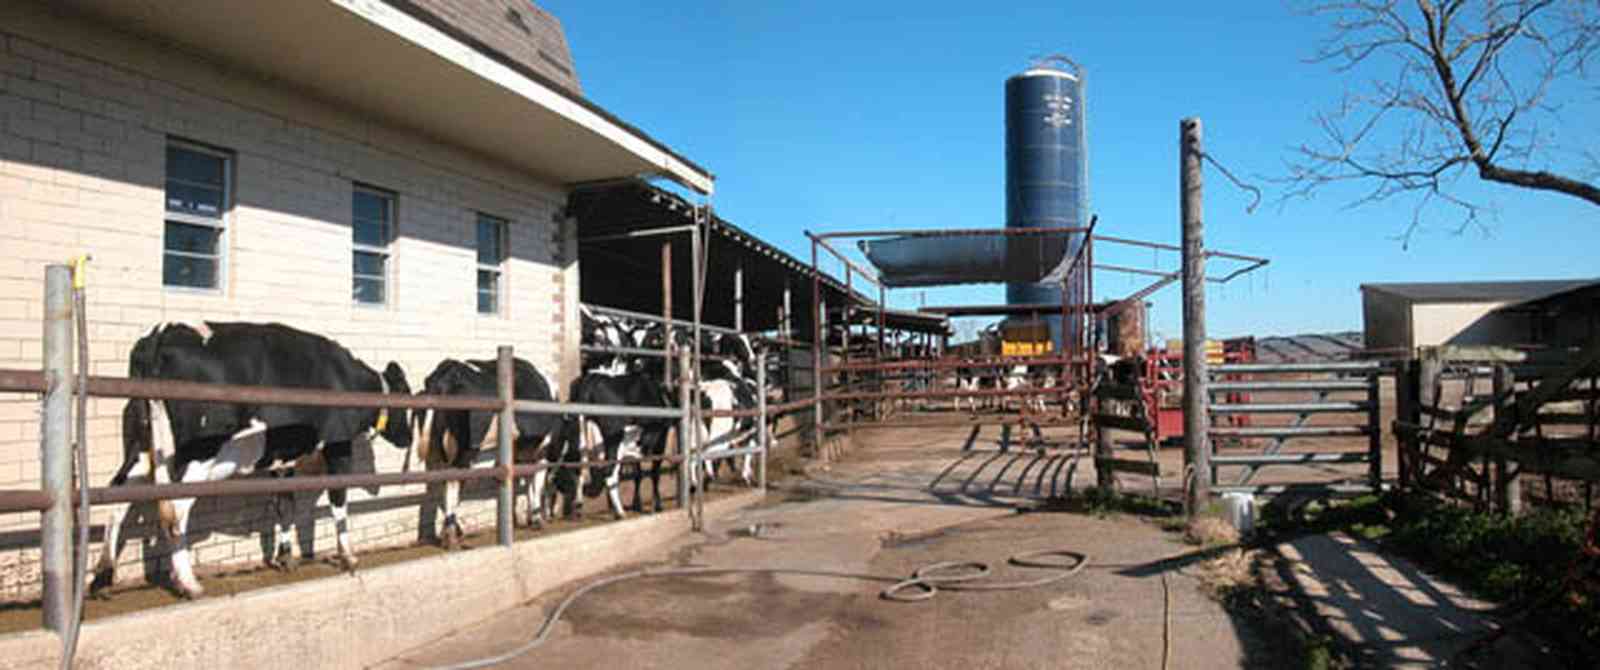 Walnut-Hill:-VanPelt-Farm_08.jpg:  dairy farm, heifer barn, milking barn, corral, fence, holstein cows, silo, farmer, farmland